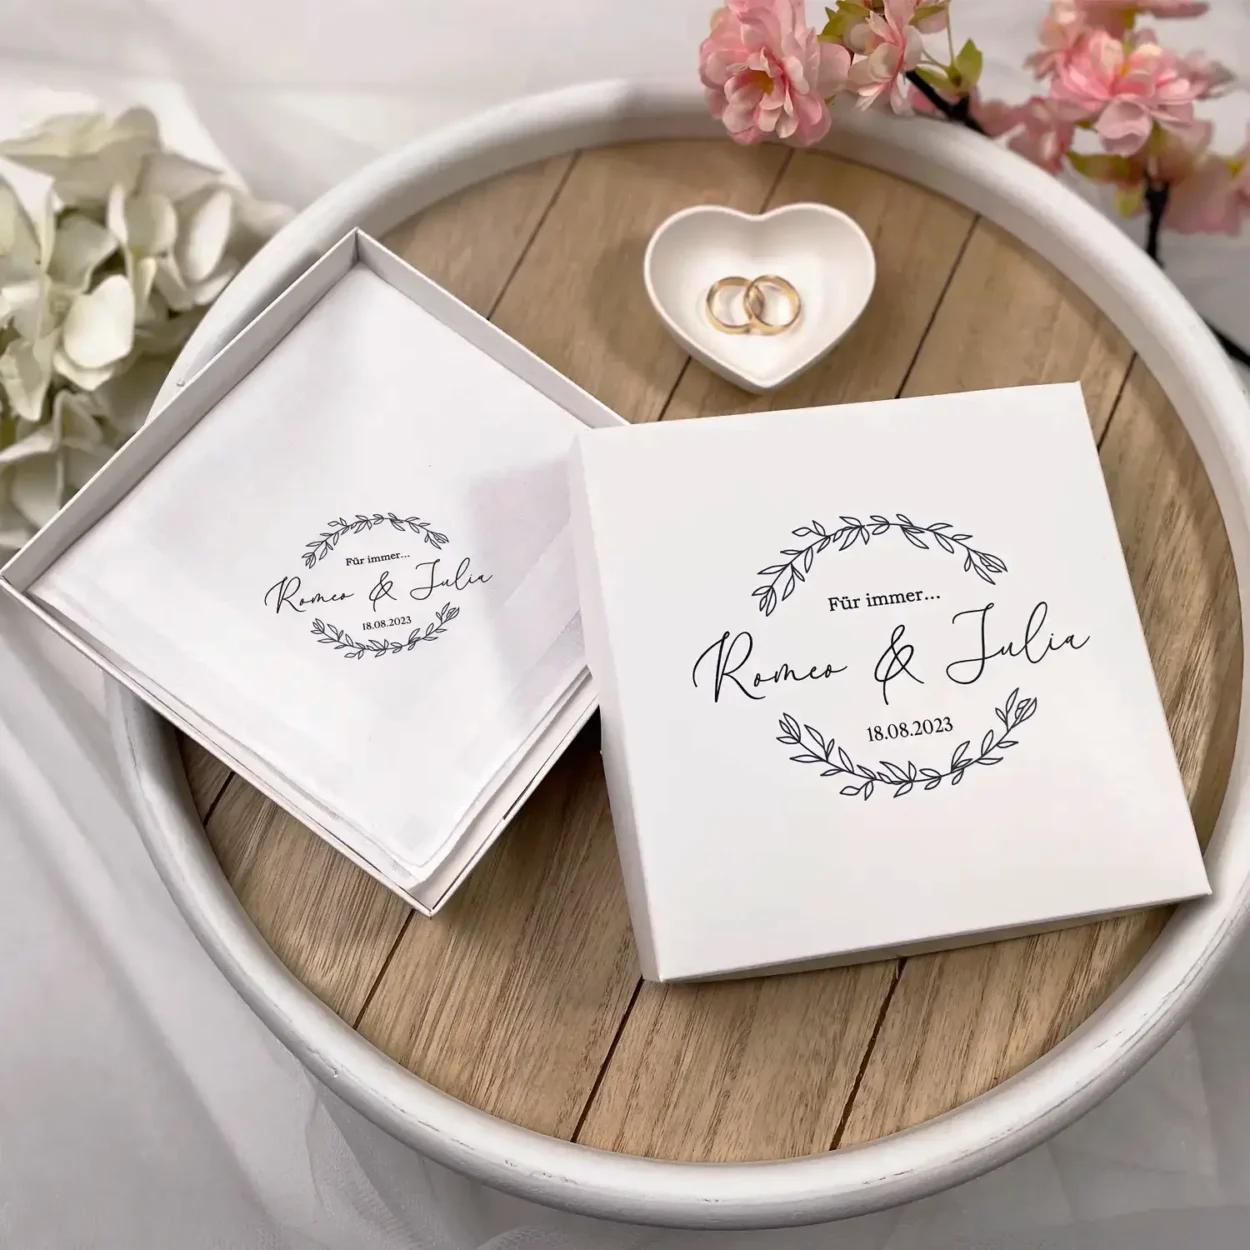 Bedrucktes Taschentuch Variante: Romeo & Julia, Produktfoto 5, Mazunikate-traumhafte Stickereien